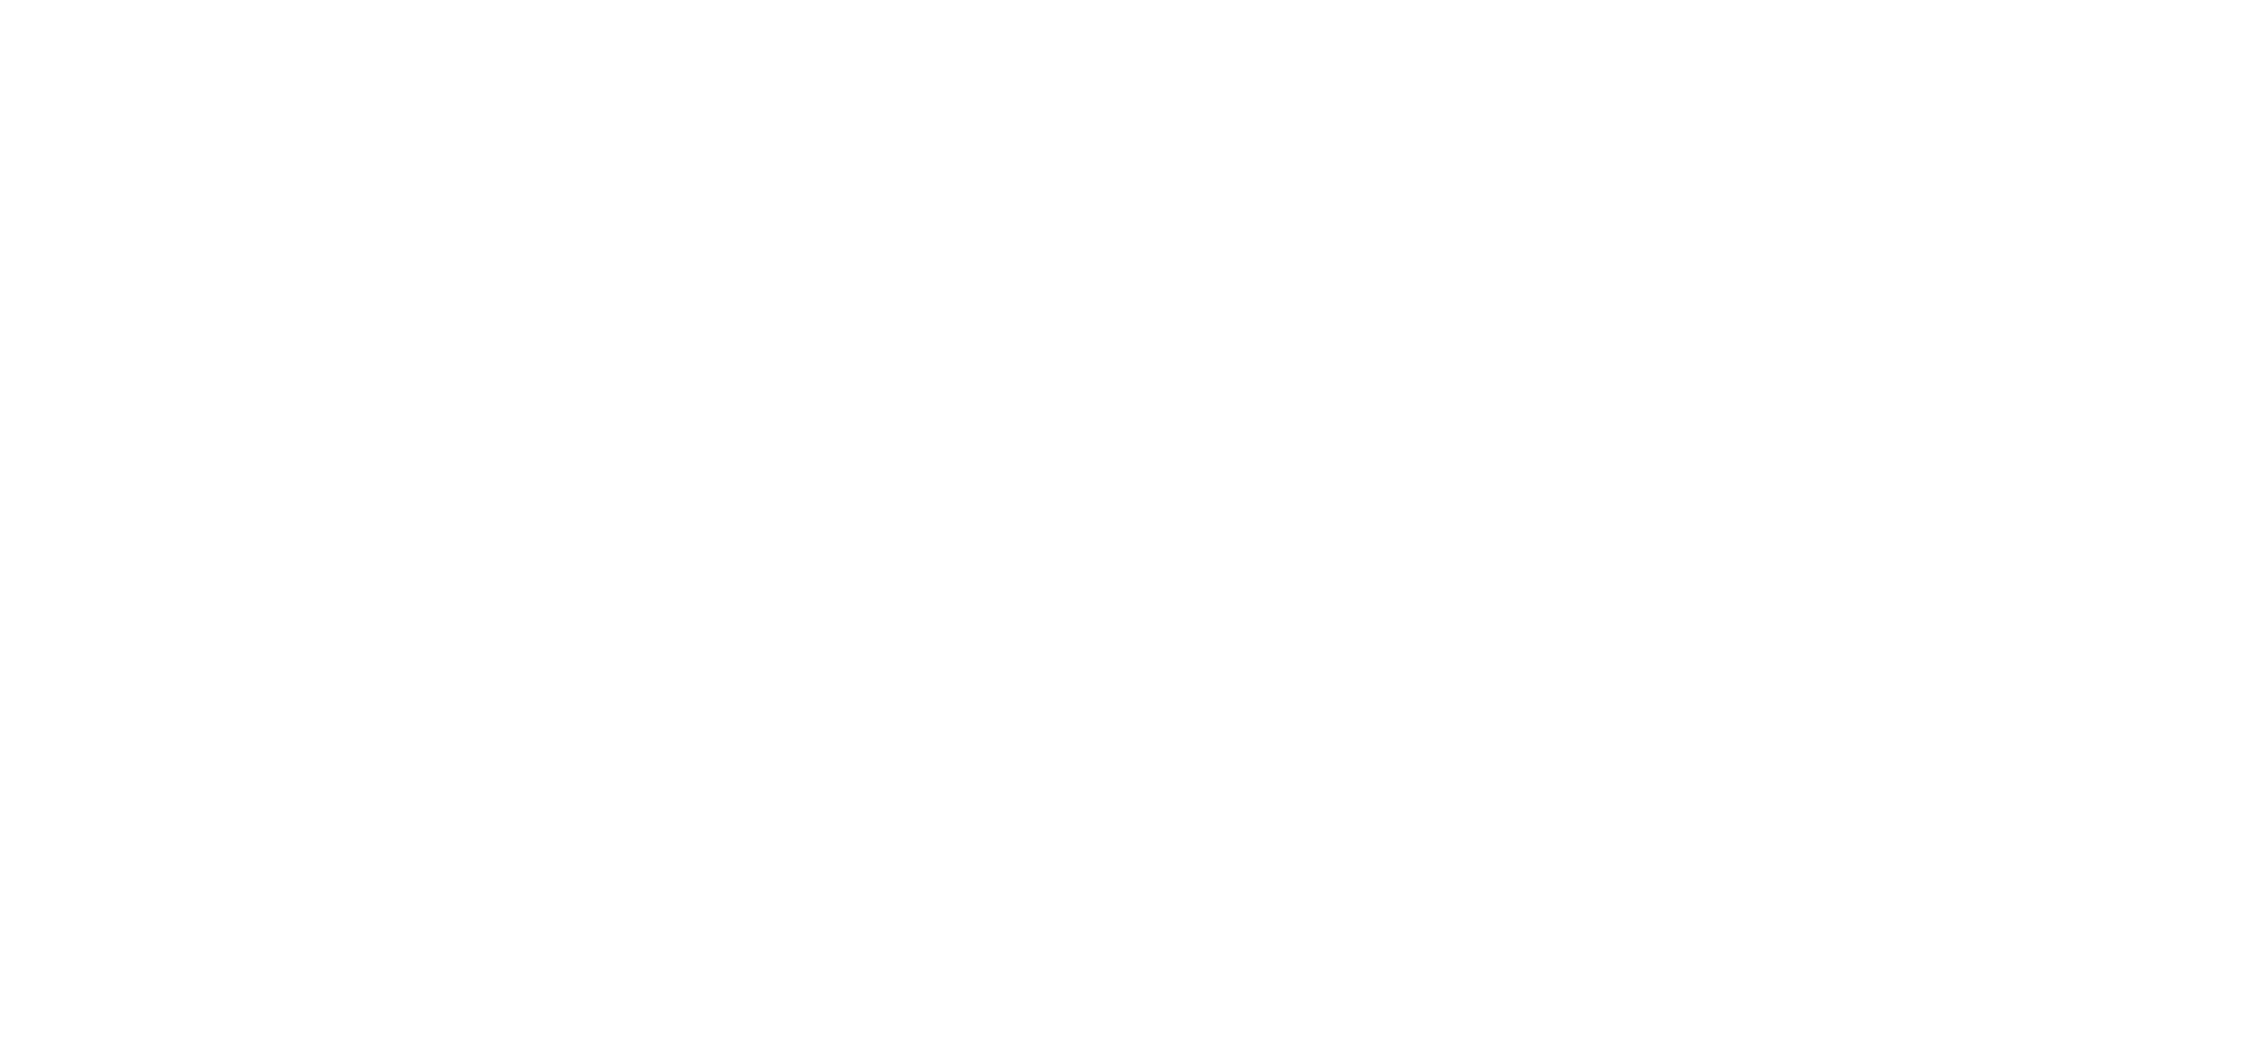 Organik Ürünler Haberleri - İz Gazete - İzmir'in Gazetesi